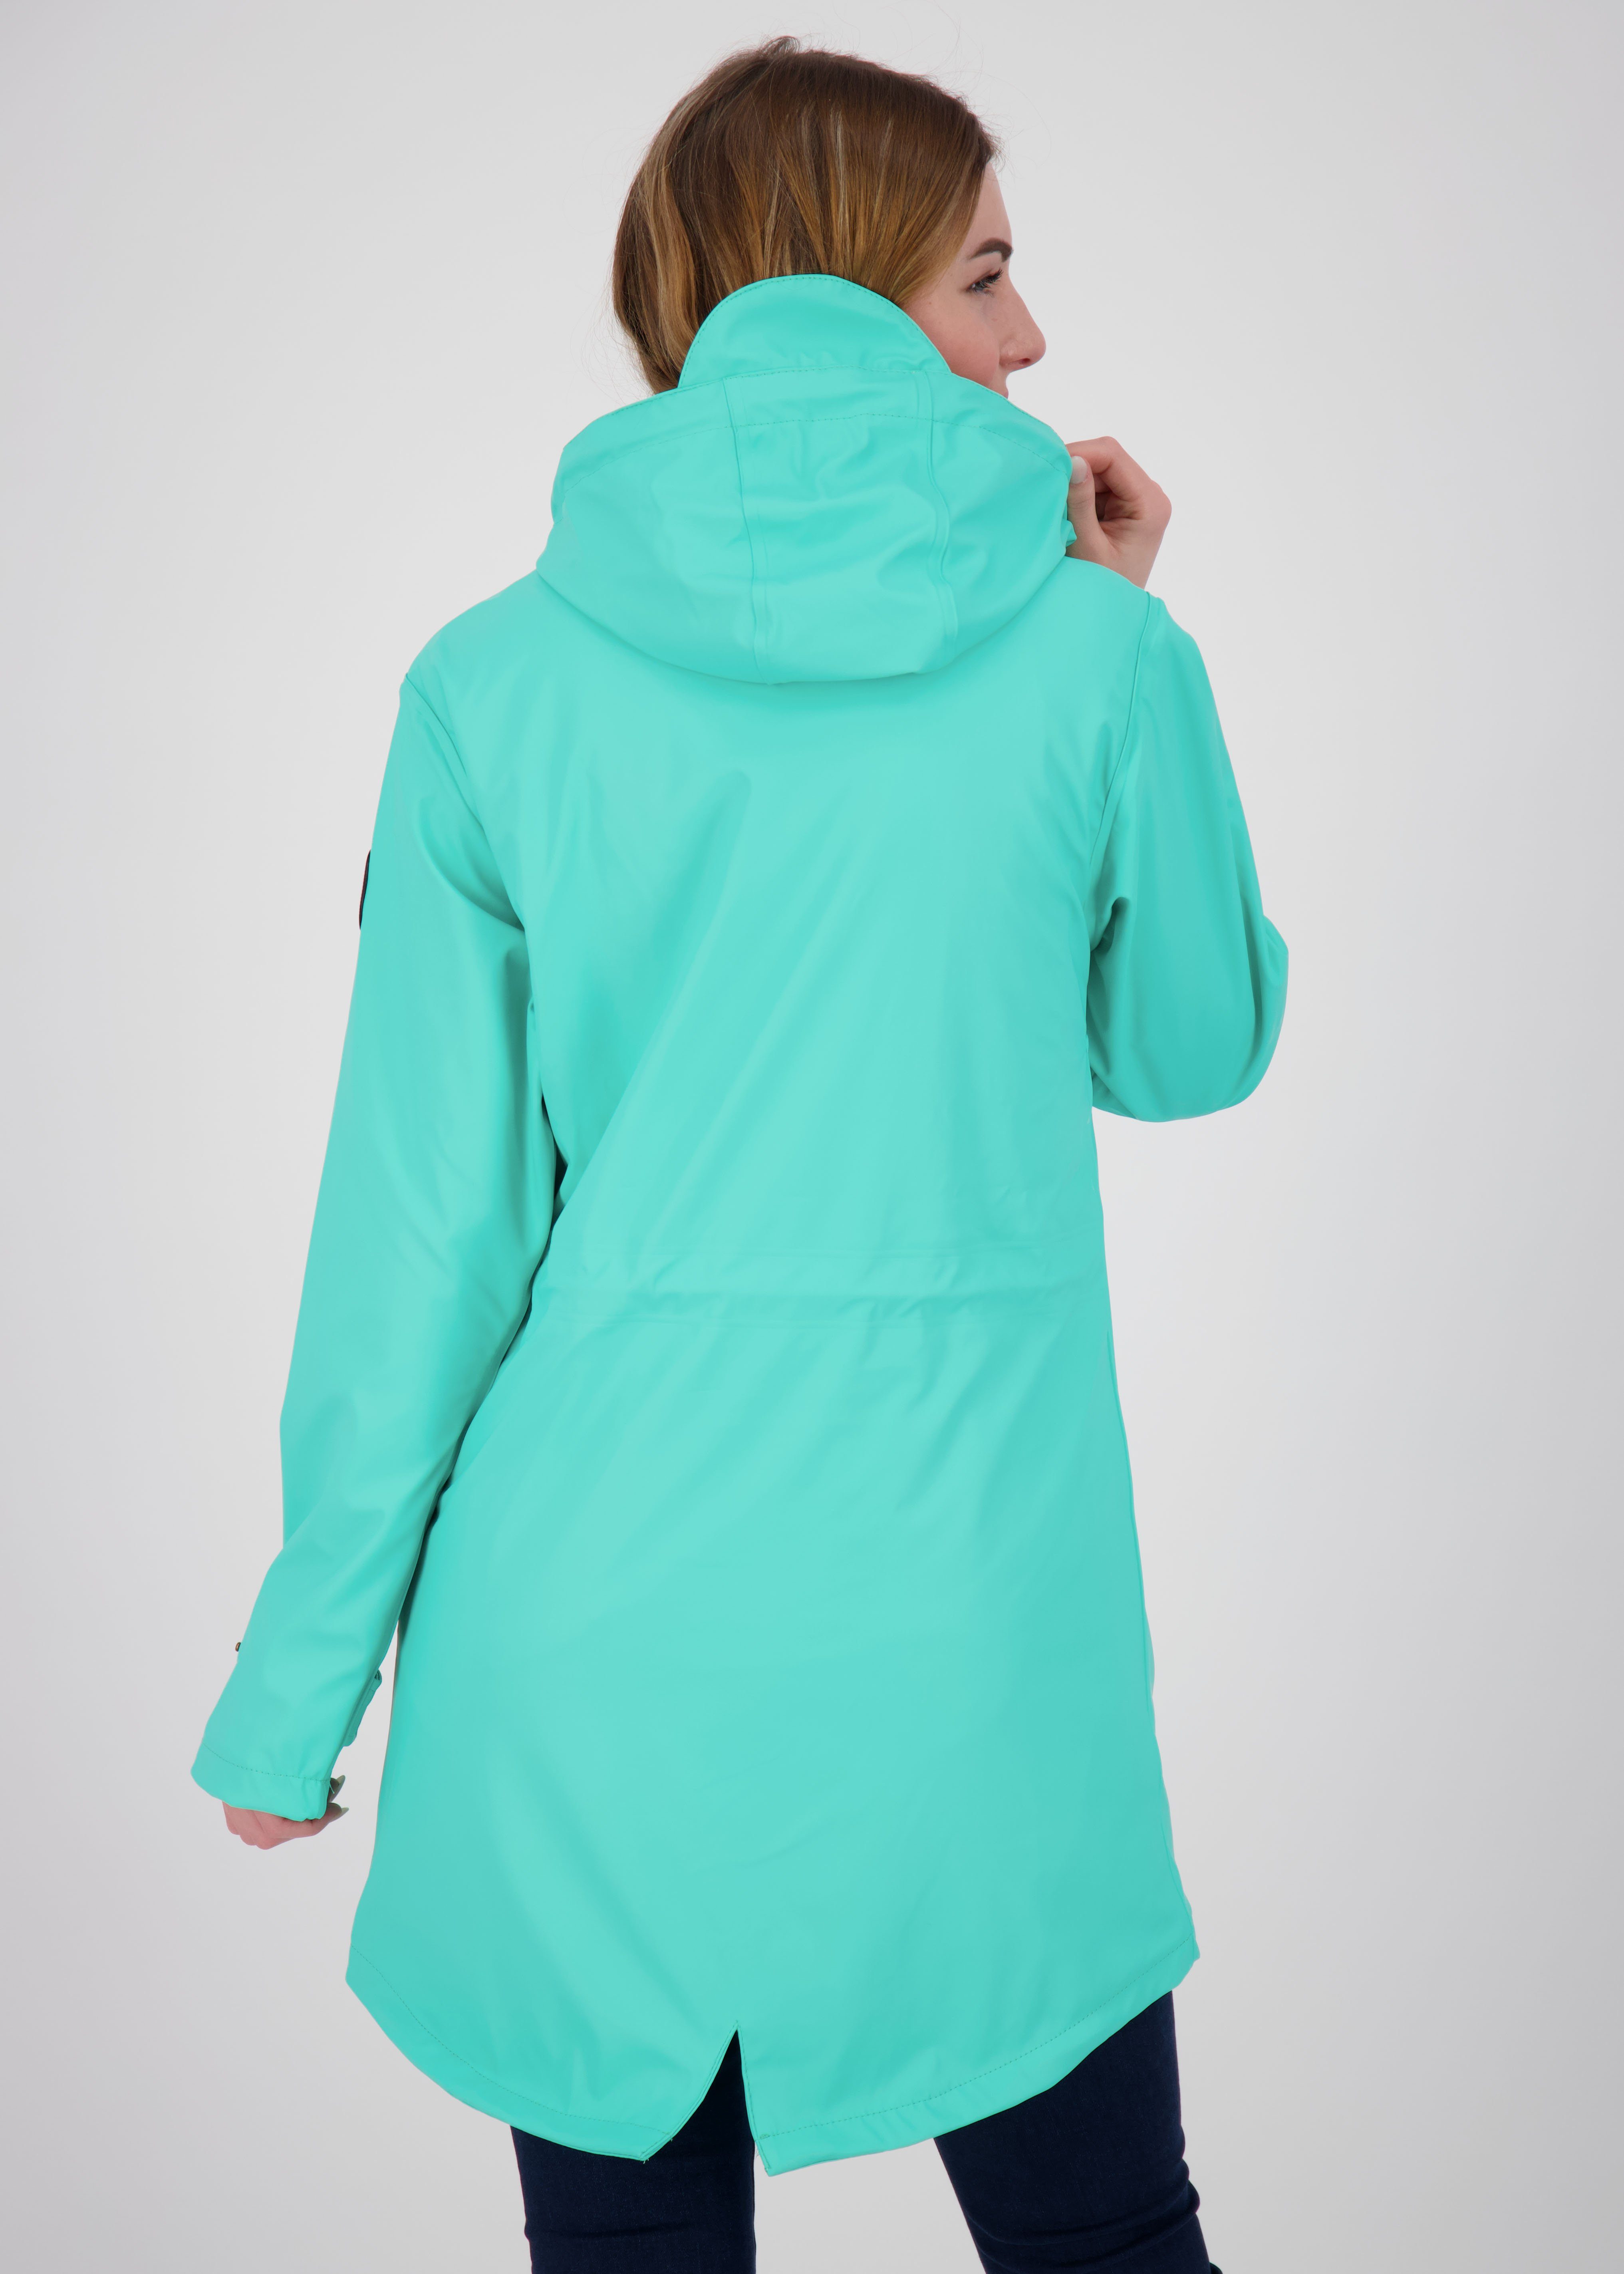 auch PEAK Friesennerz Regenjacke blau in Größen erhältlich Active WOMEN Großen DEPROC LOVE UNI